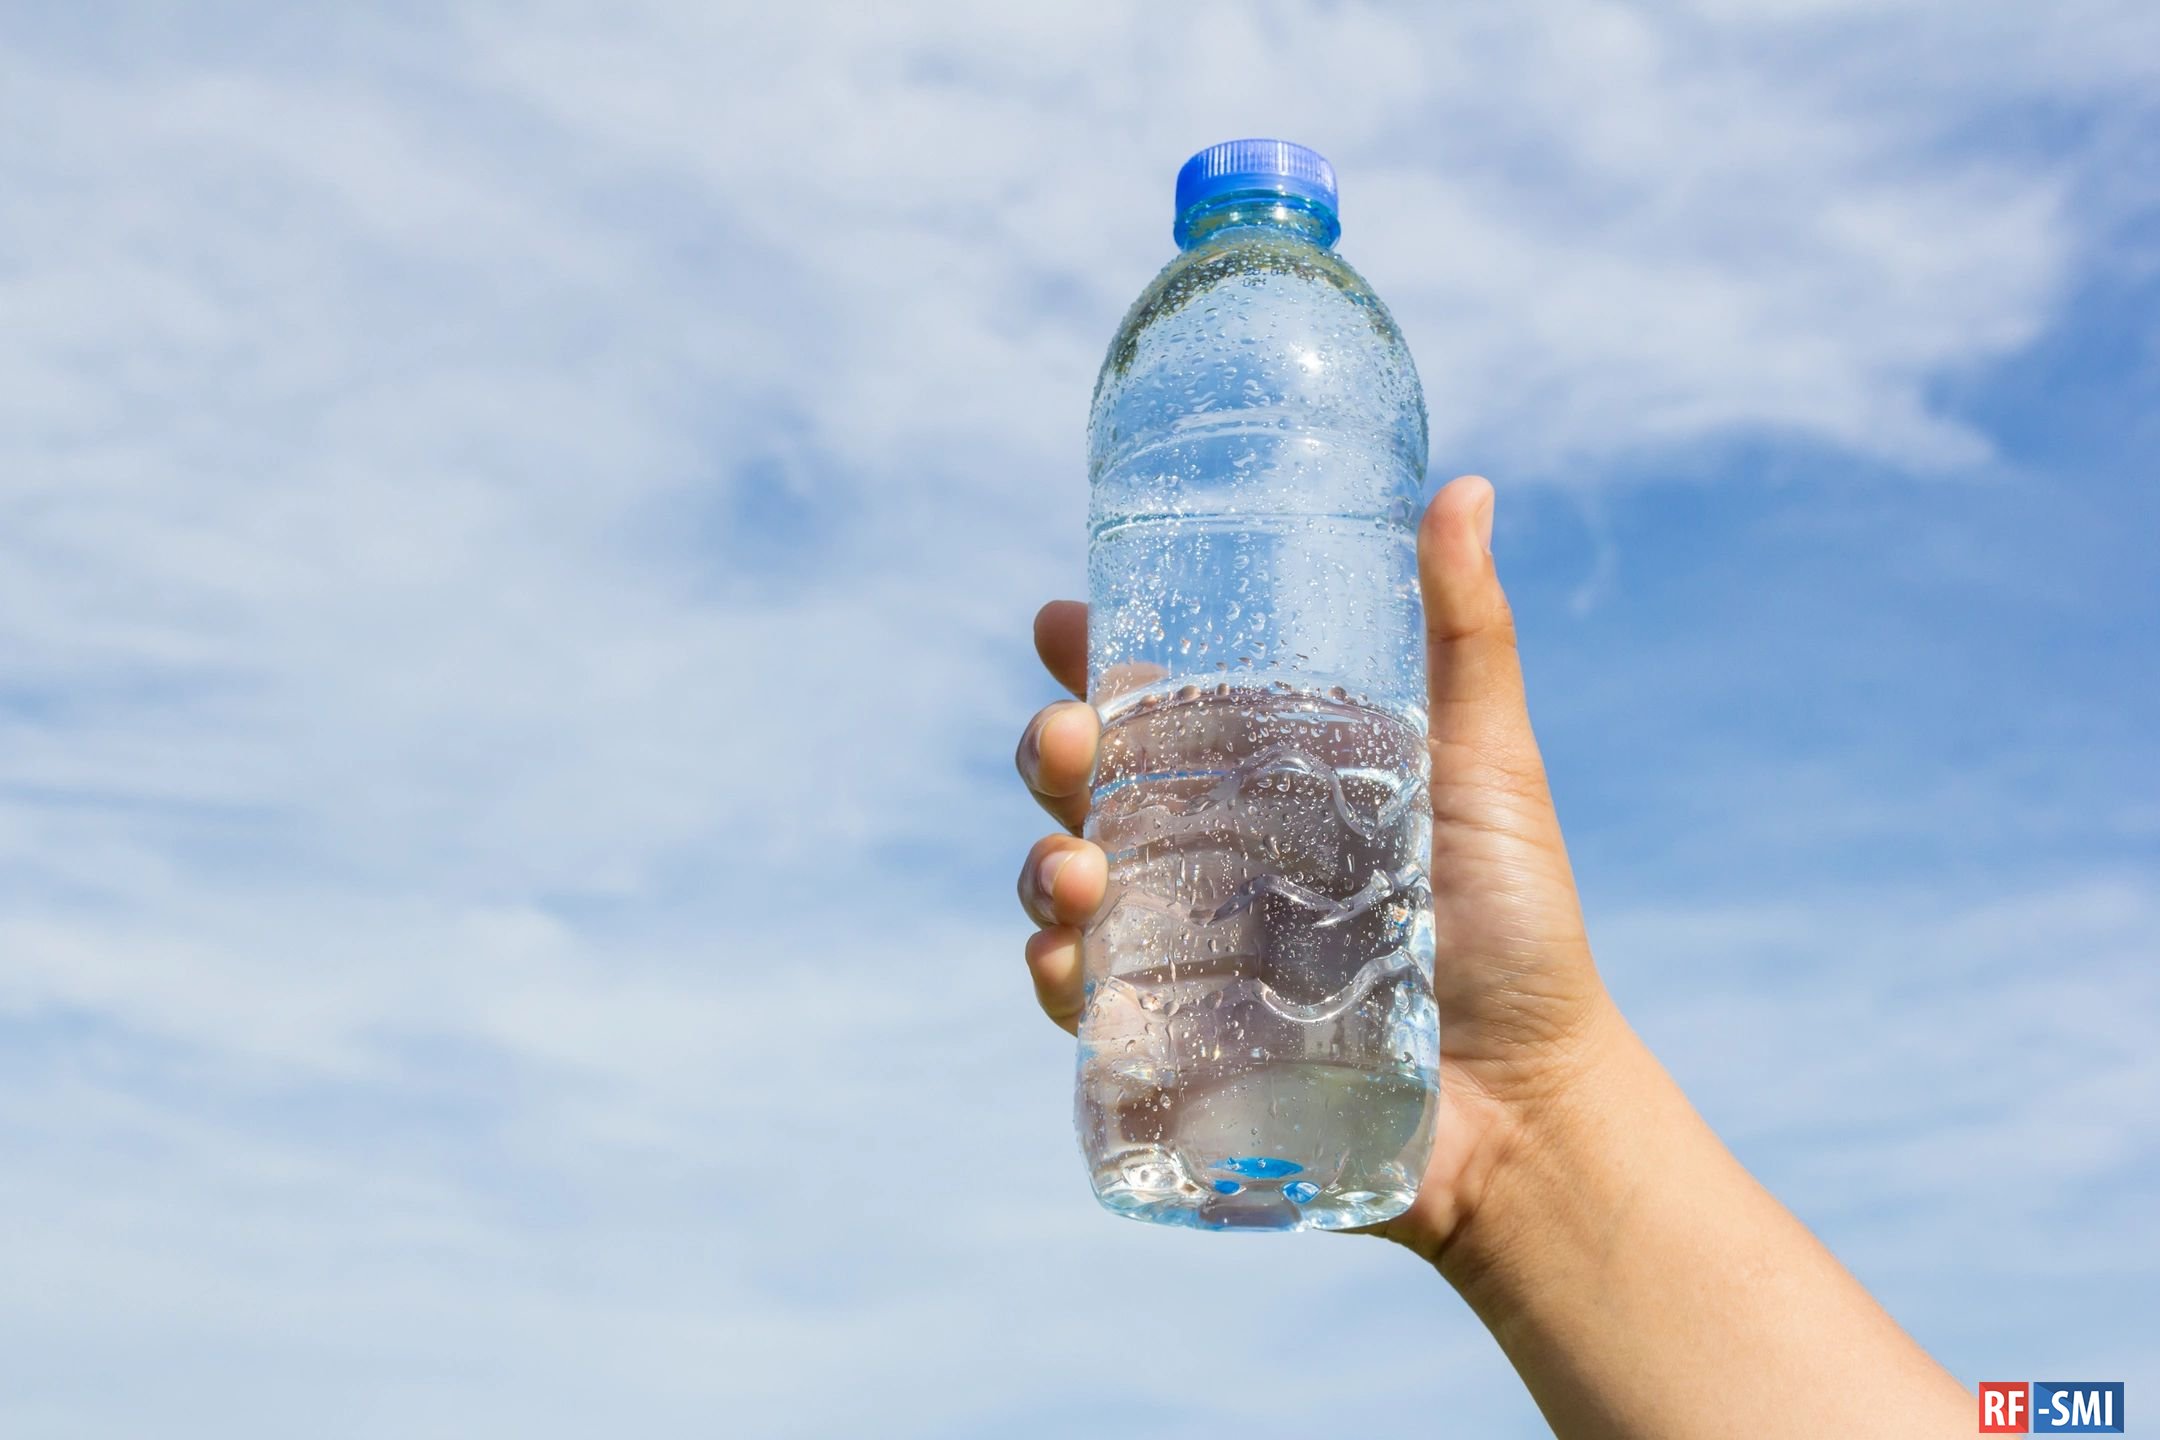 Бутылка негазированной воды. Бутылка для воды. Пластиковая бутылка для воды. Бутылка воды в руке. Питьевые бутылочки для воды.